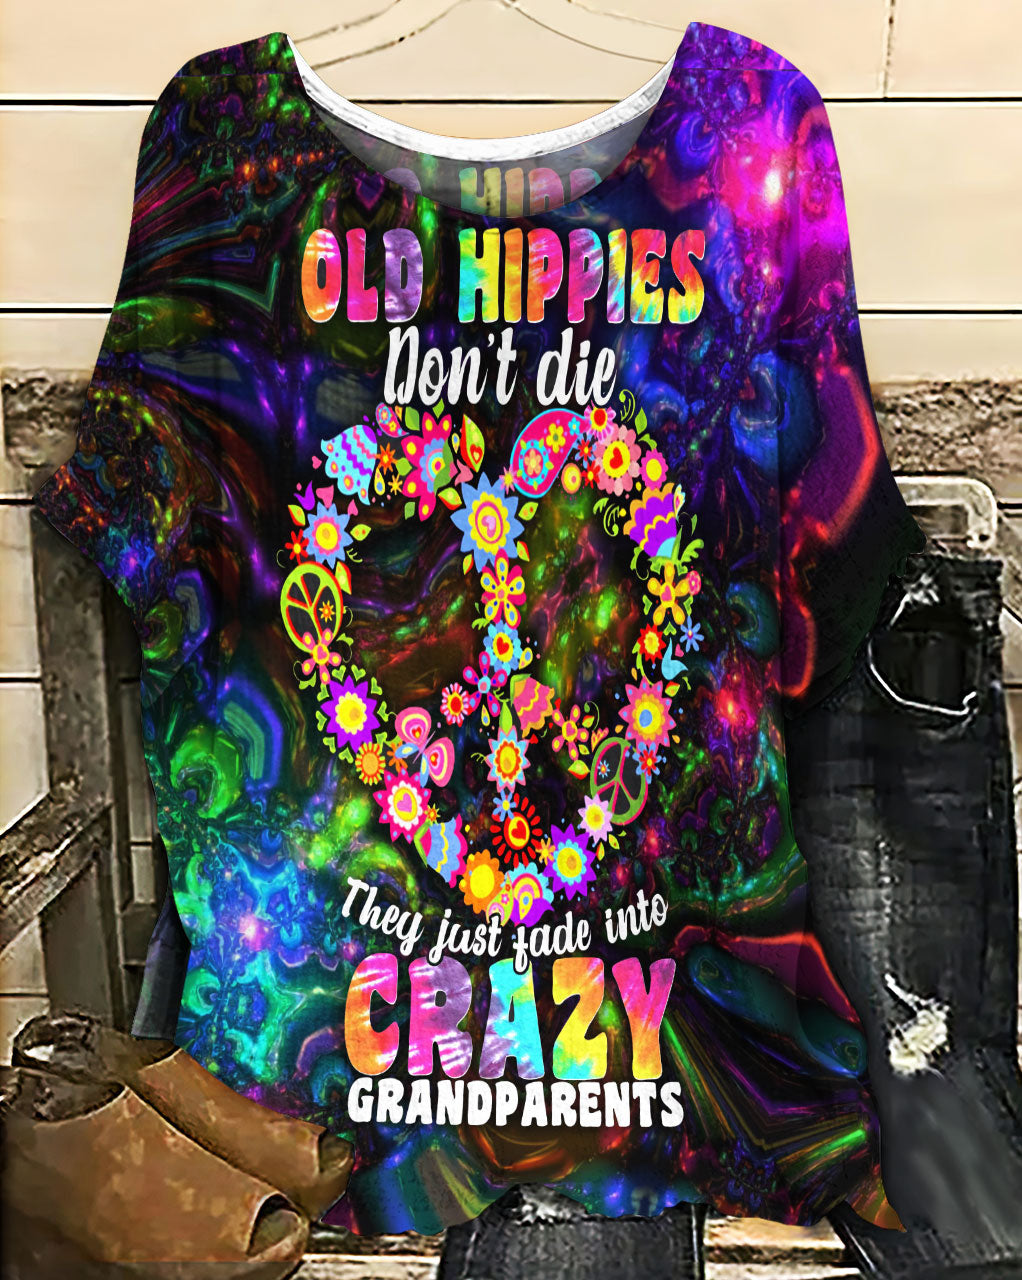 Hippie Old Hippies Don't Die - Women's T-shirt With Bat Sleeve - Owls Matrix LTD